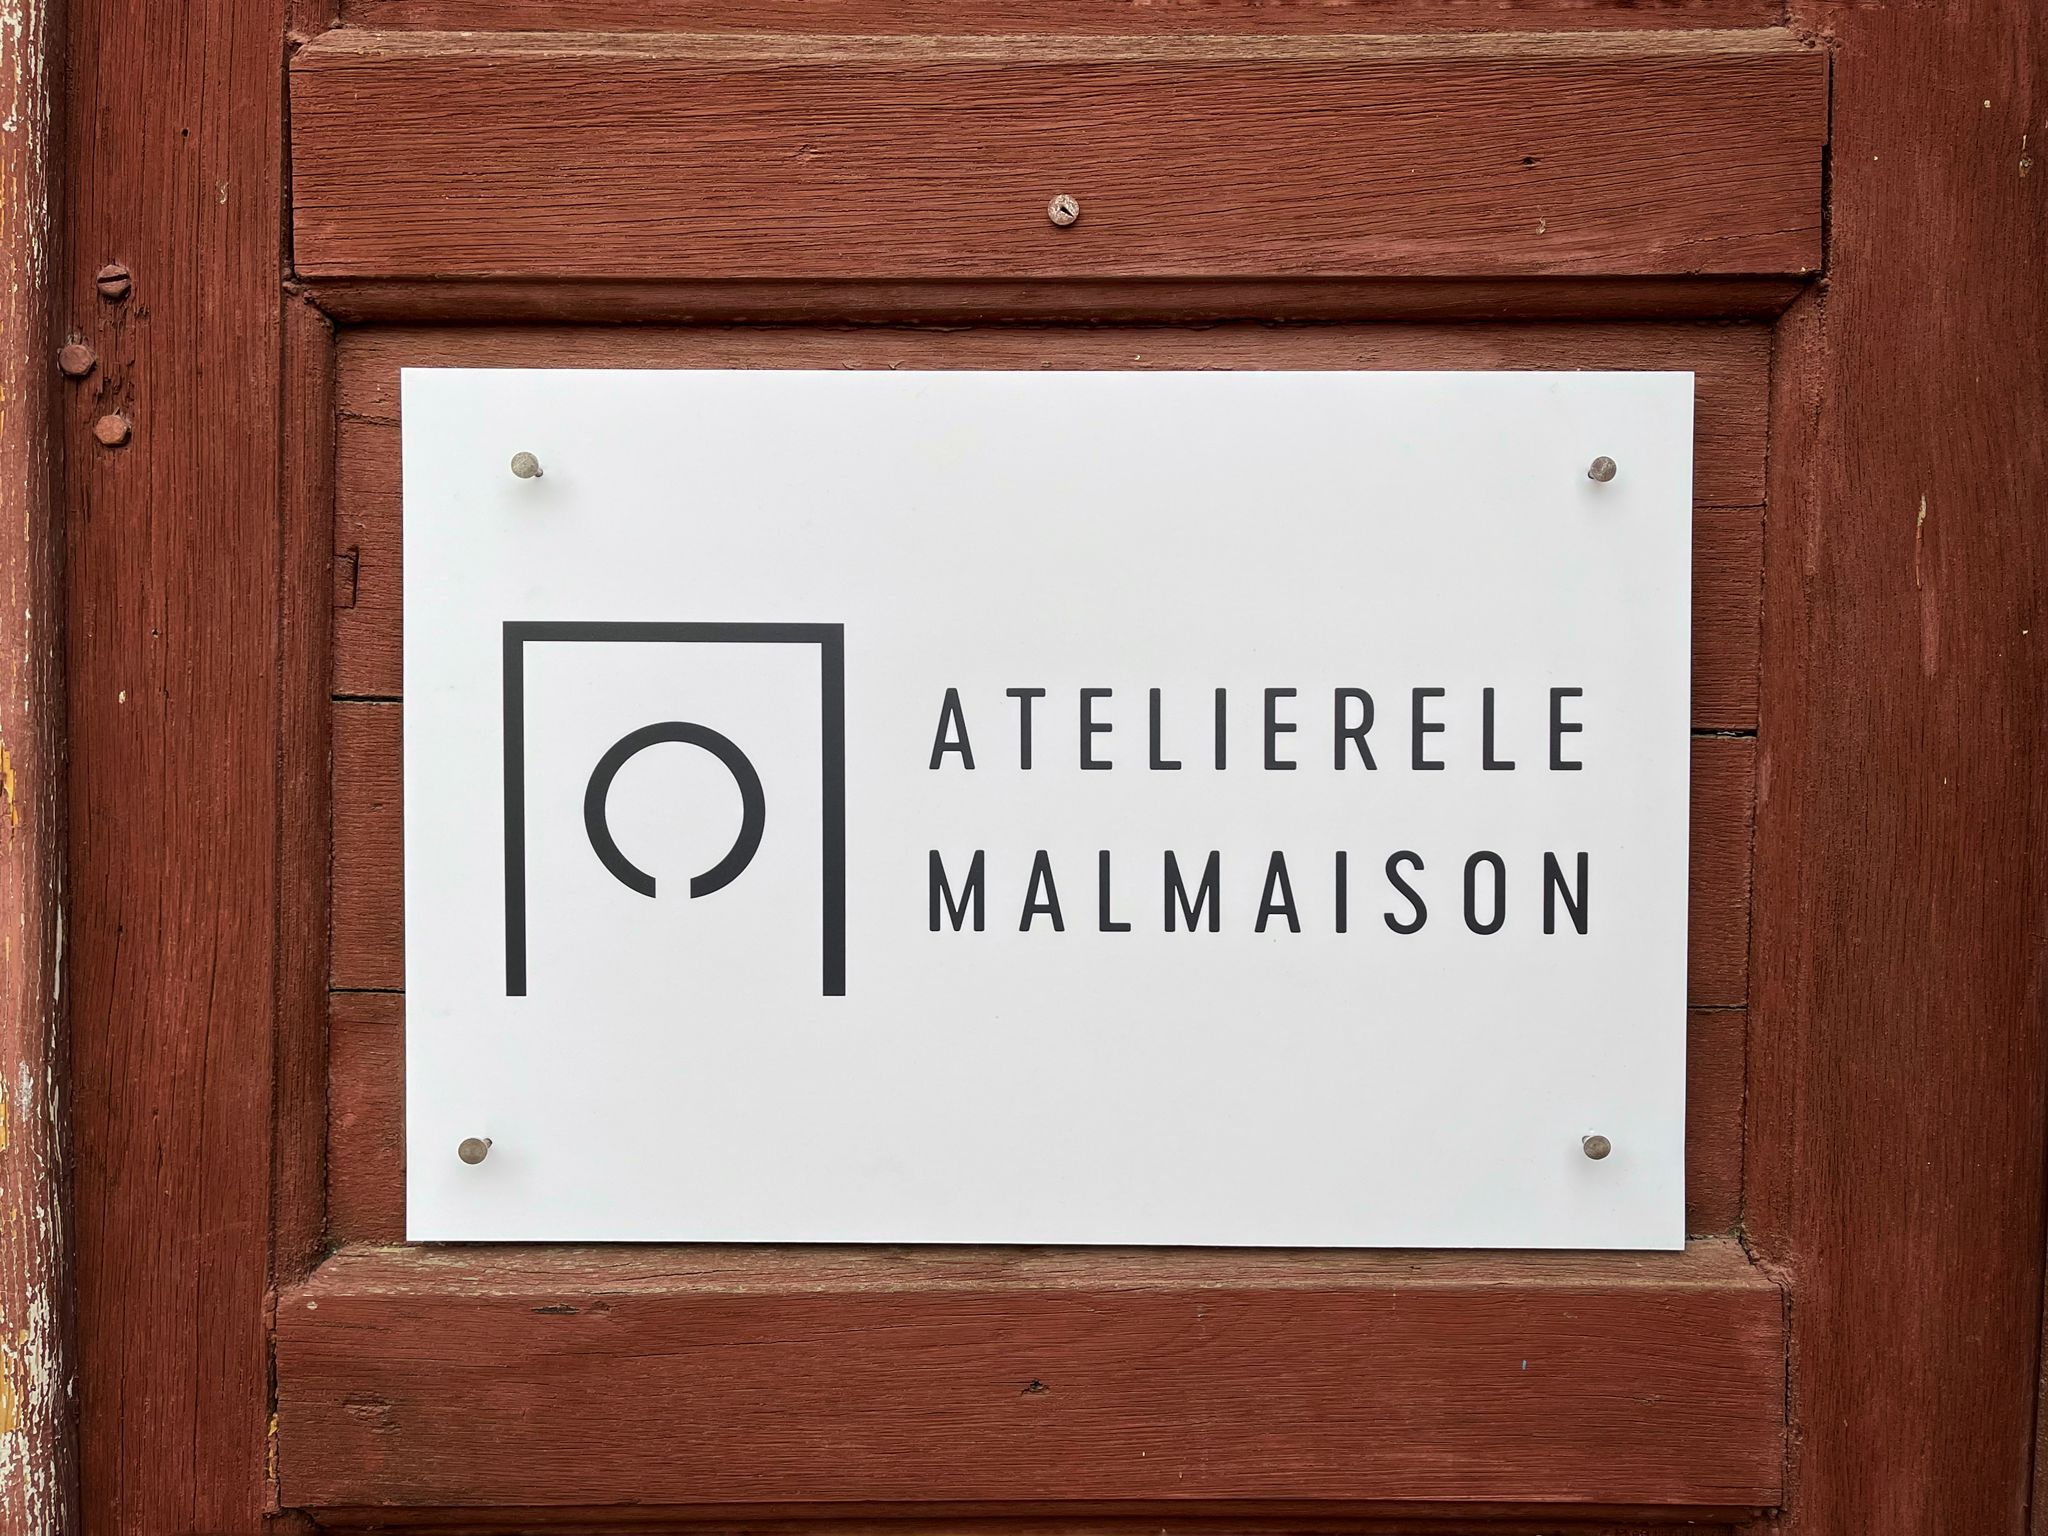 Interviu cu artiștii și membrii fondatori Malmaison